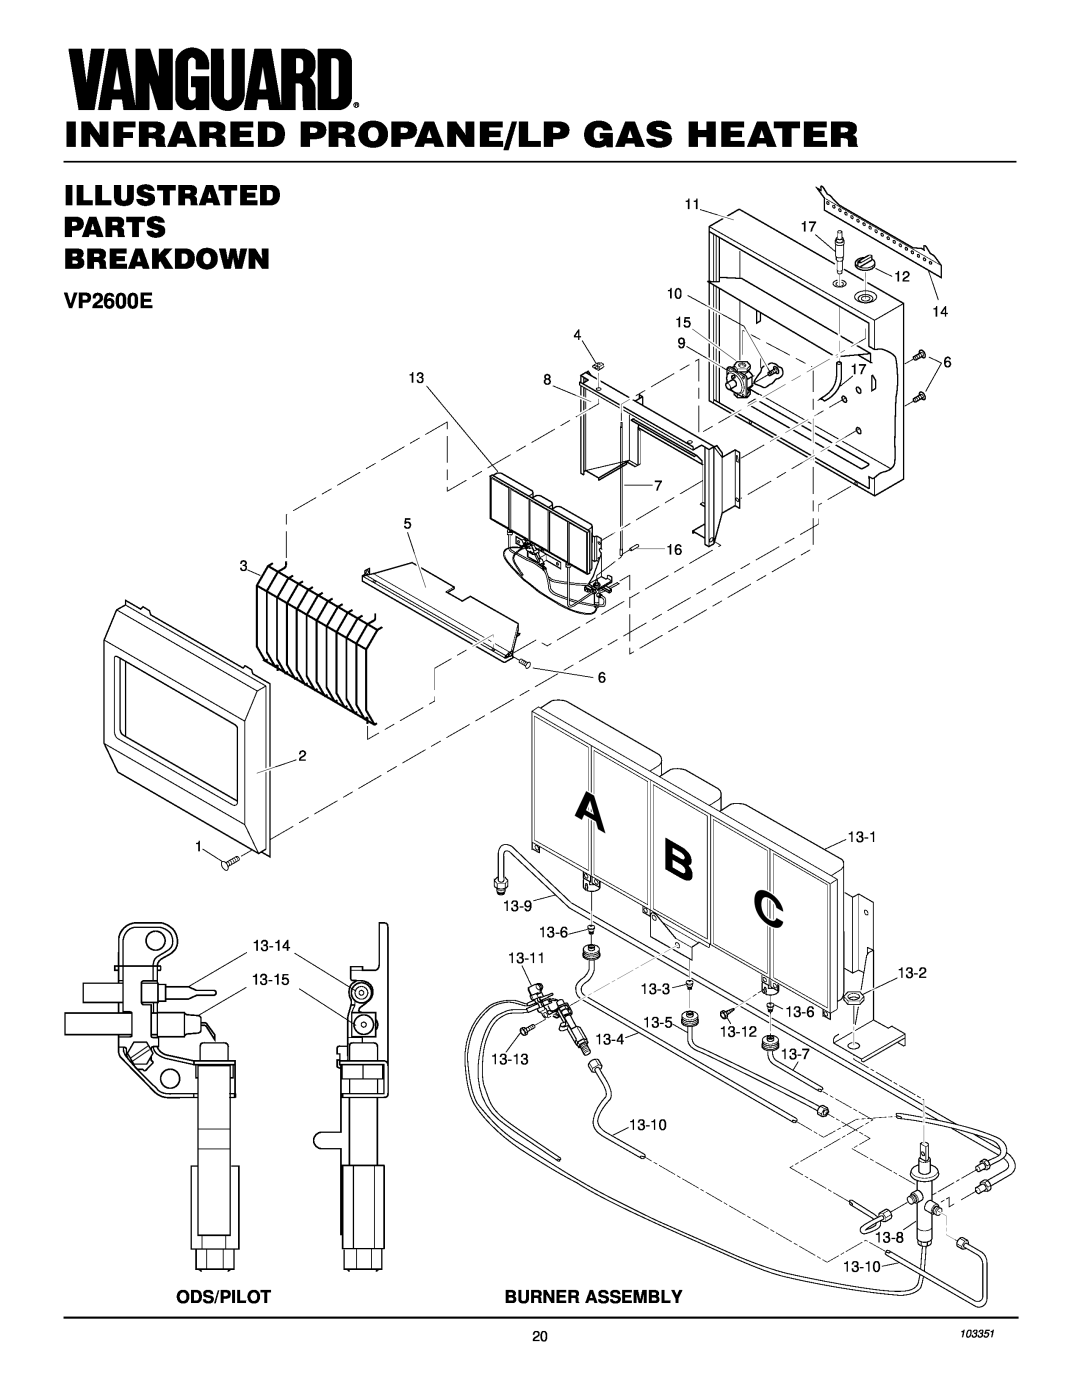 Desa VP1600E installation manual Infrared Propane/Lp Gas Heater, Illustrated Parts Breakdown, VP2600E 